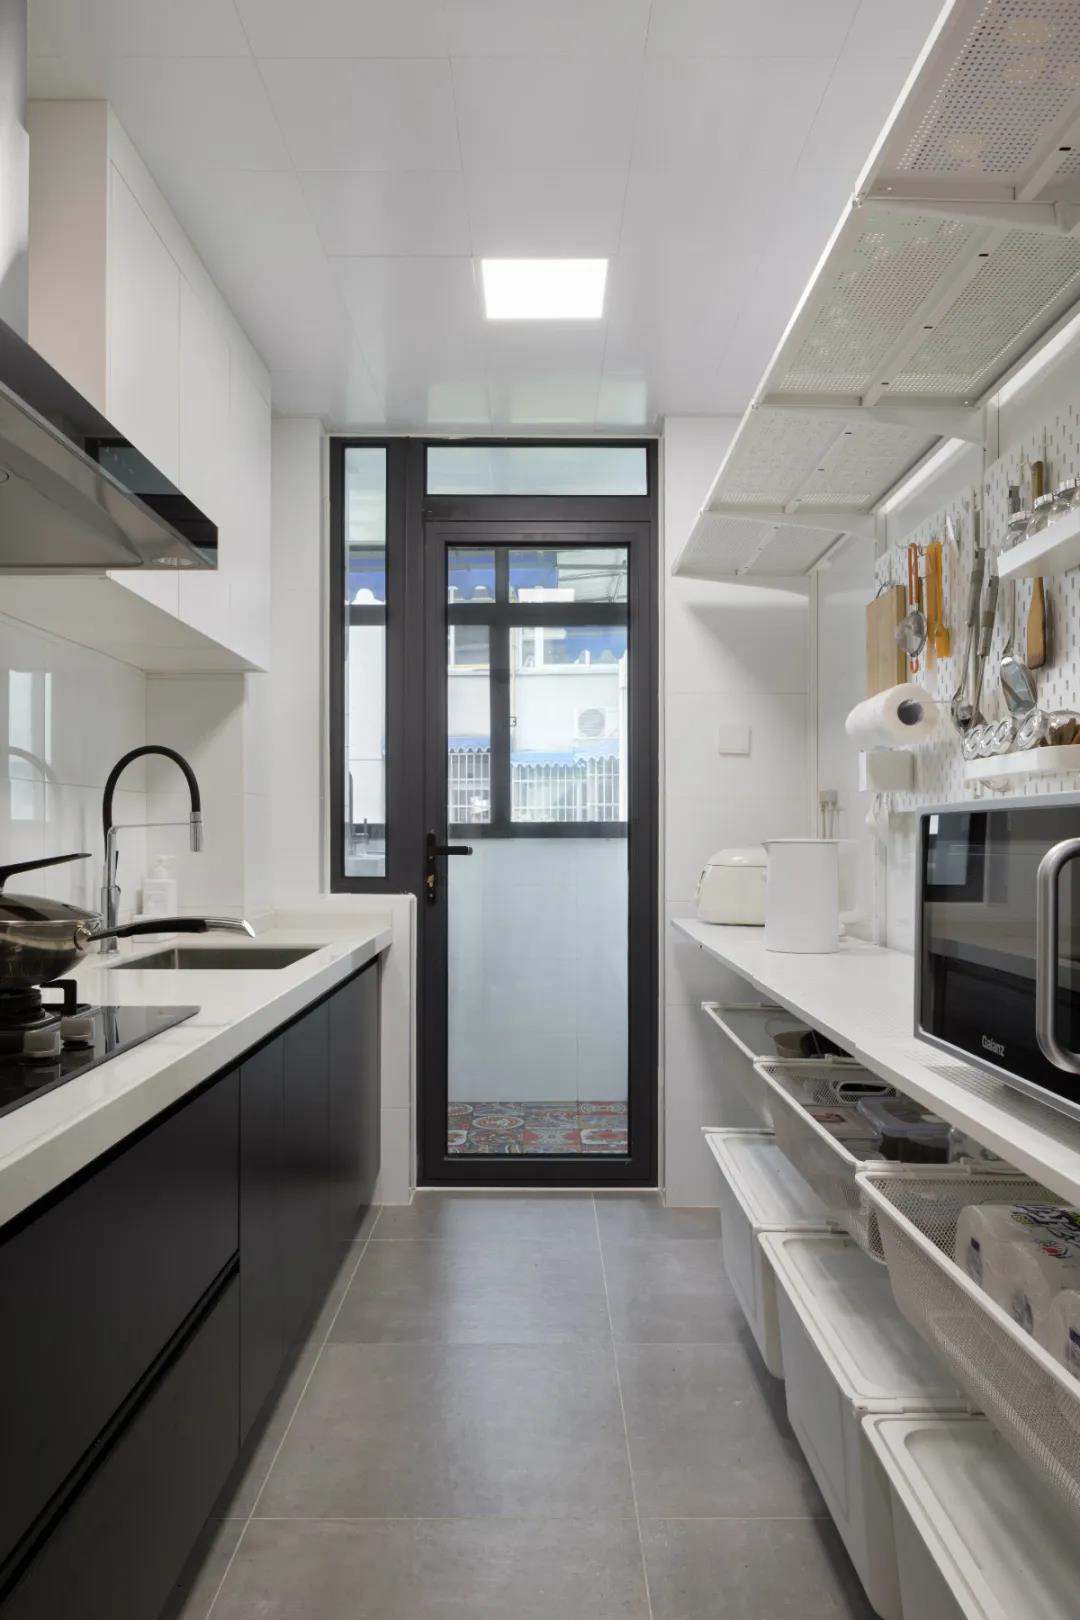 厨房白与黑的设计手法看似简洁，却能牵动人的思绪，赋予空间现代品质。